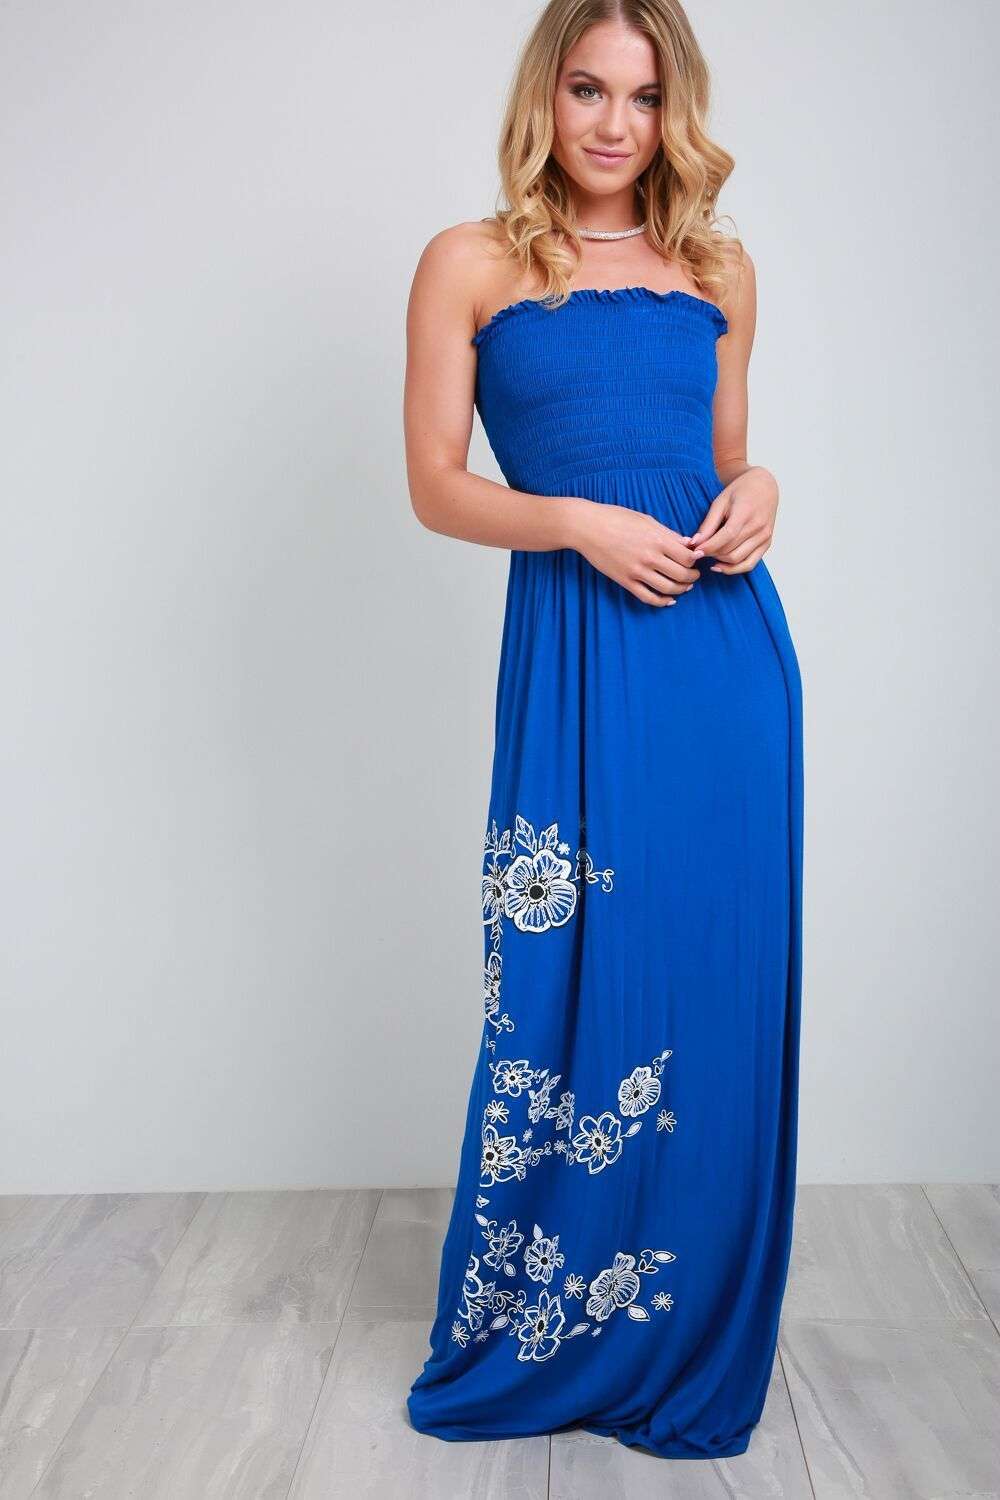 Jessi Floral Print Bandeau Maxi Dress - bejealous-com